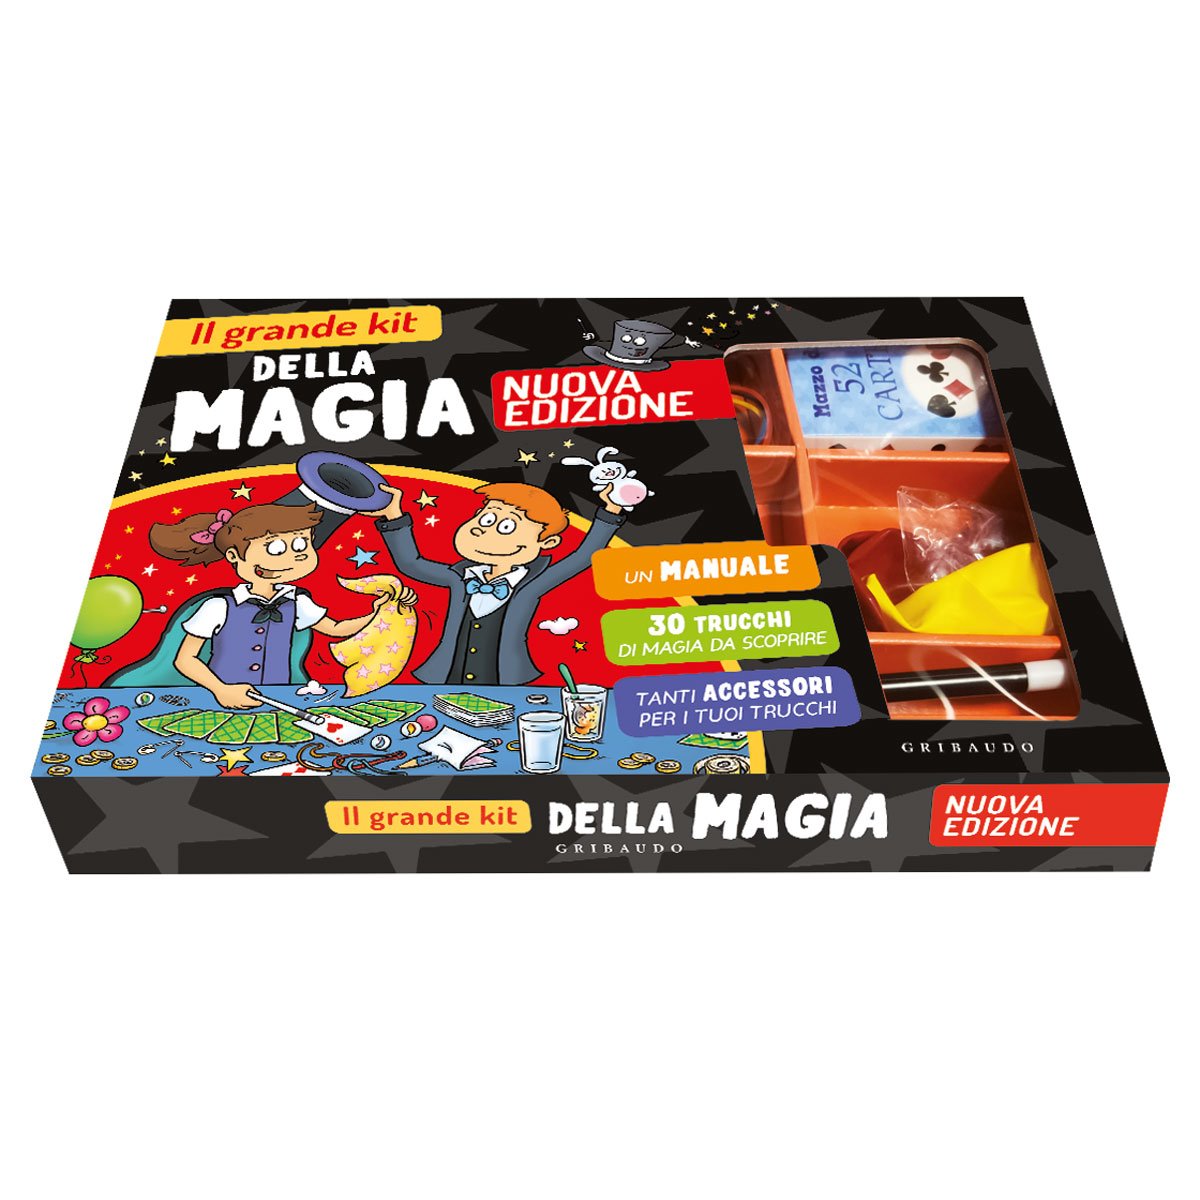 Il grande kit della magia (Nuova edizione)